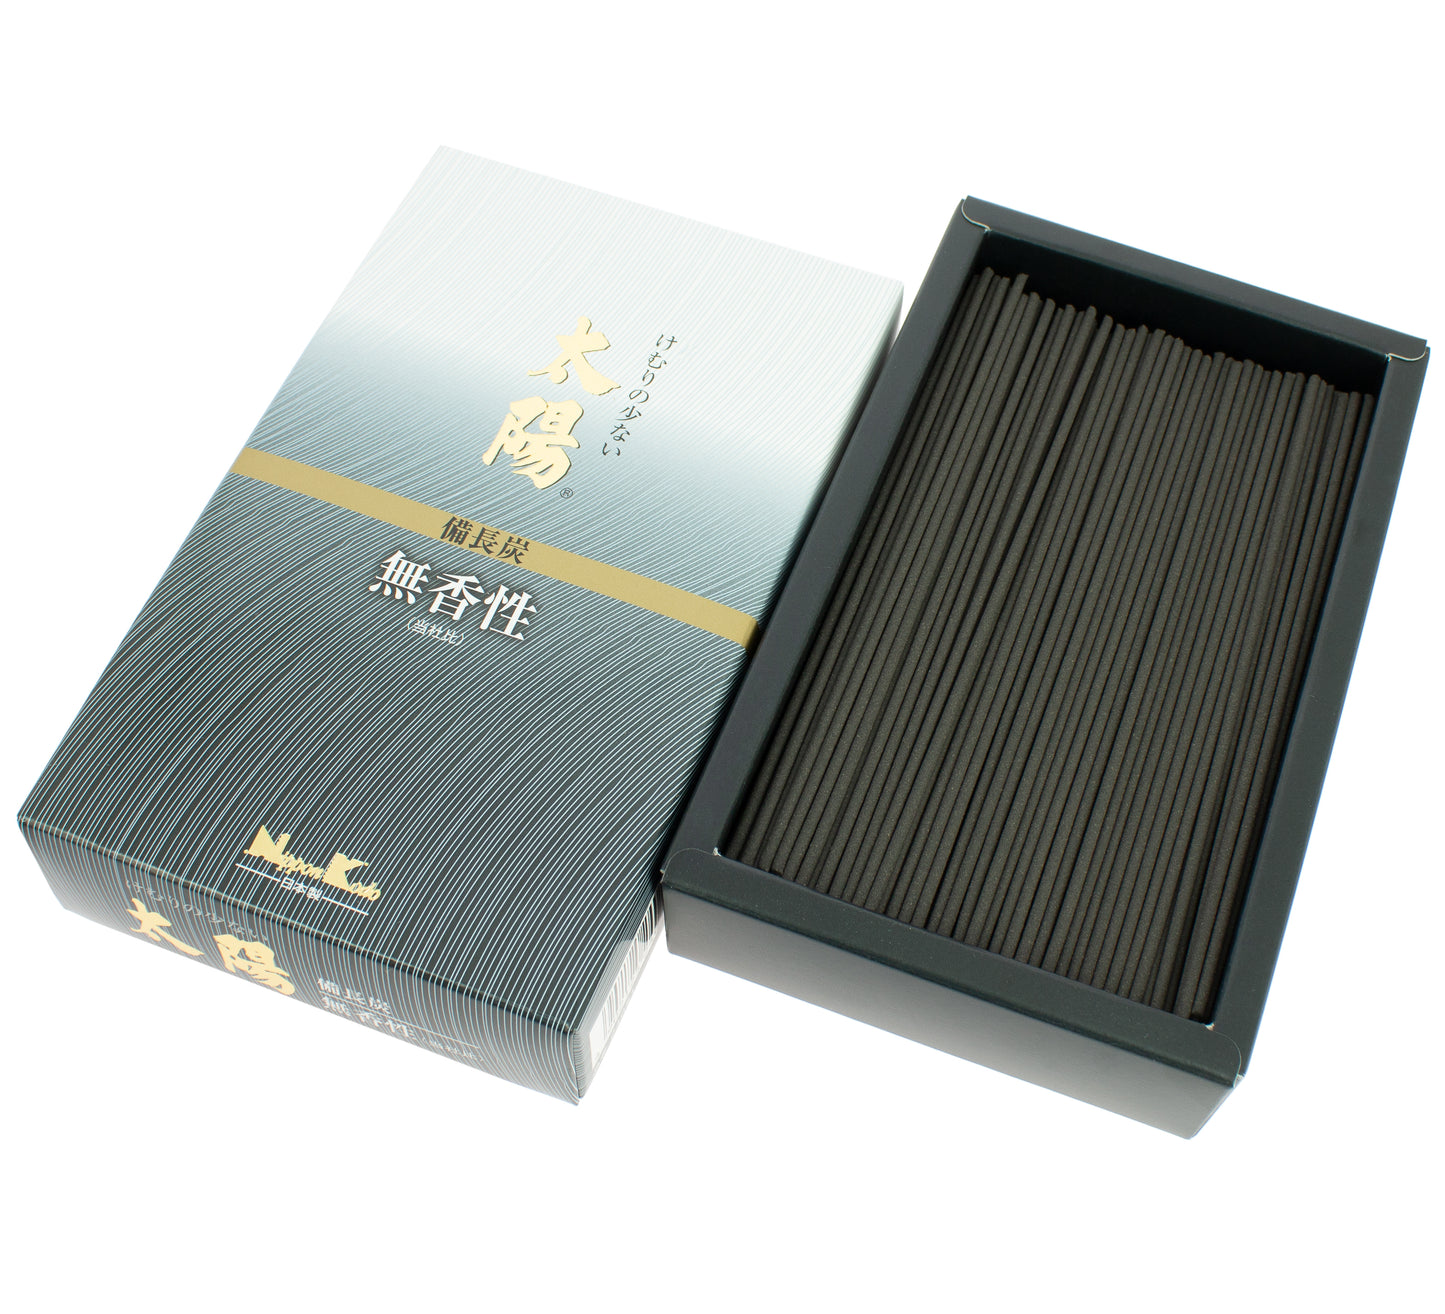 Taiyo Incense - Binchotan, Large Box